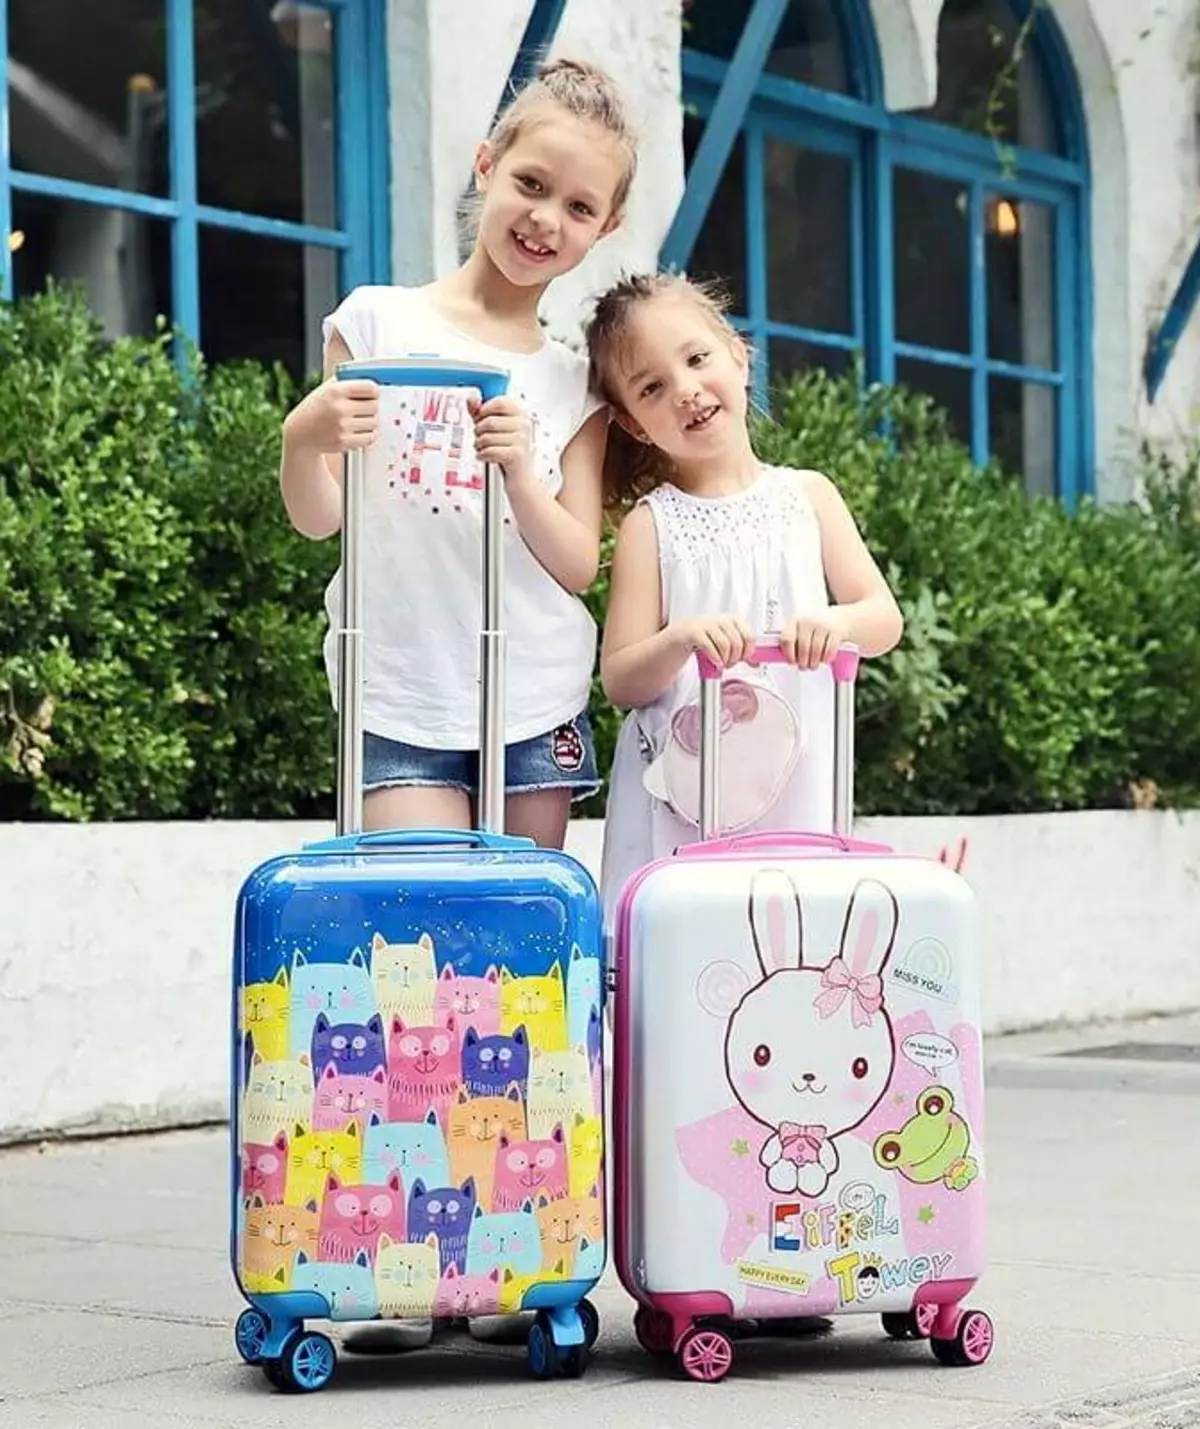 กระเป๋าเดินทางสำหรับเด็กผู้หญิง: สำหรับวัยรุ่นอายุ 10-12 ปีและเด็กผู้หญิง 8, 9 ปีนางแบบบนล้อและที่จับพับเก็บได้ สีชมพูและสีอื่น ๆ 13657_16